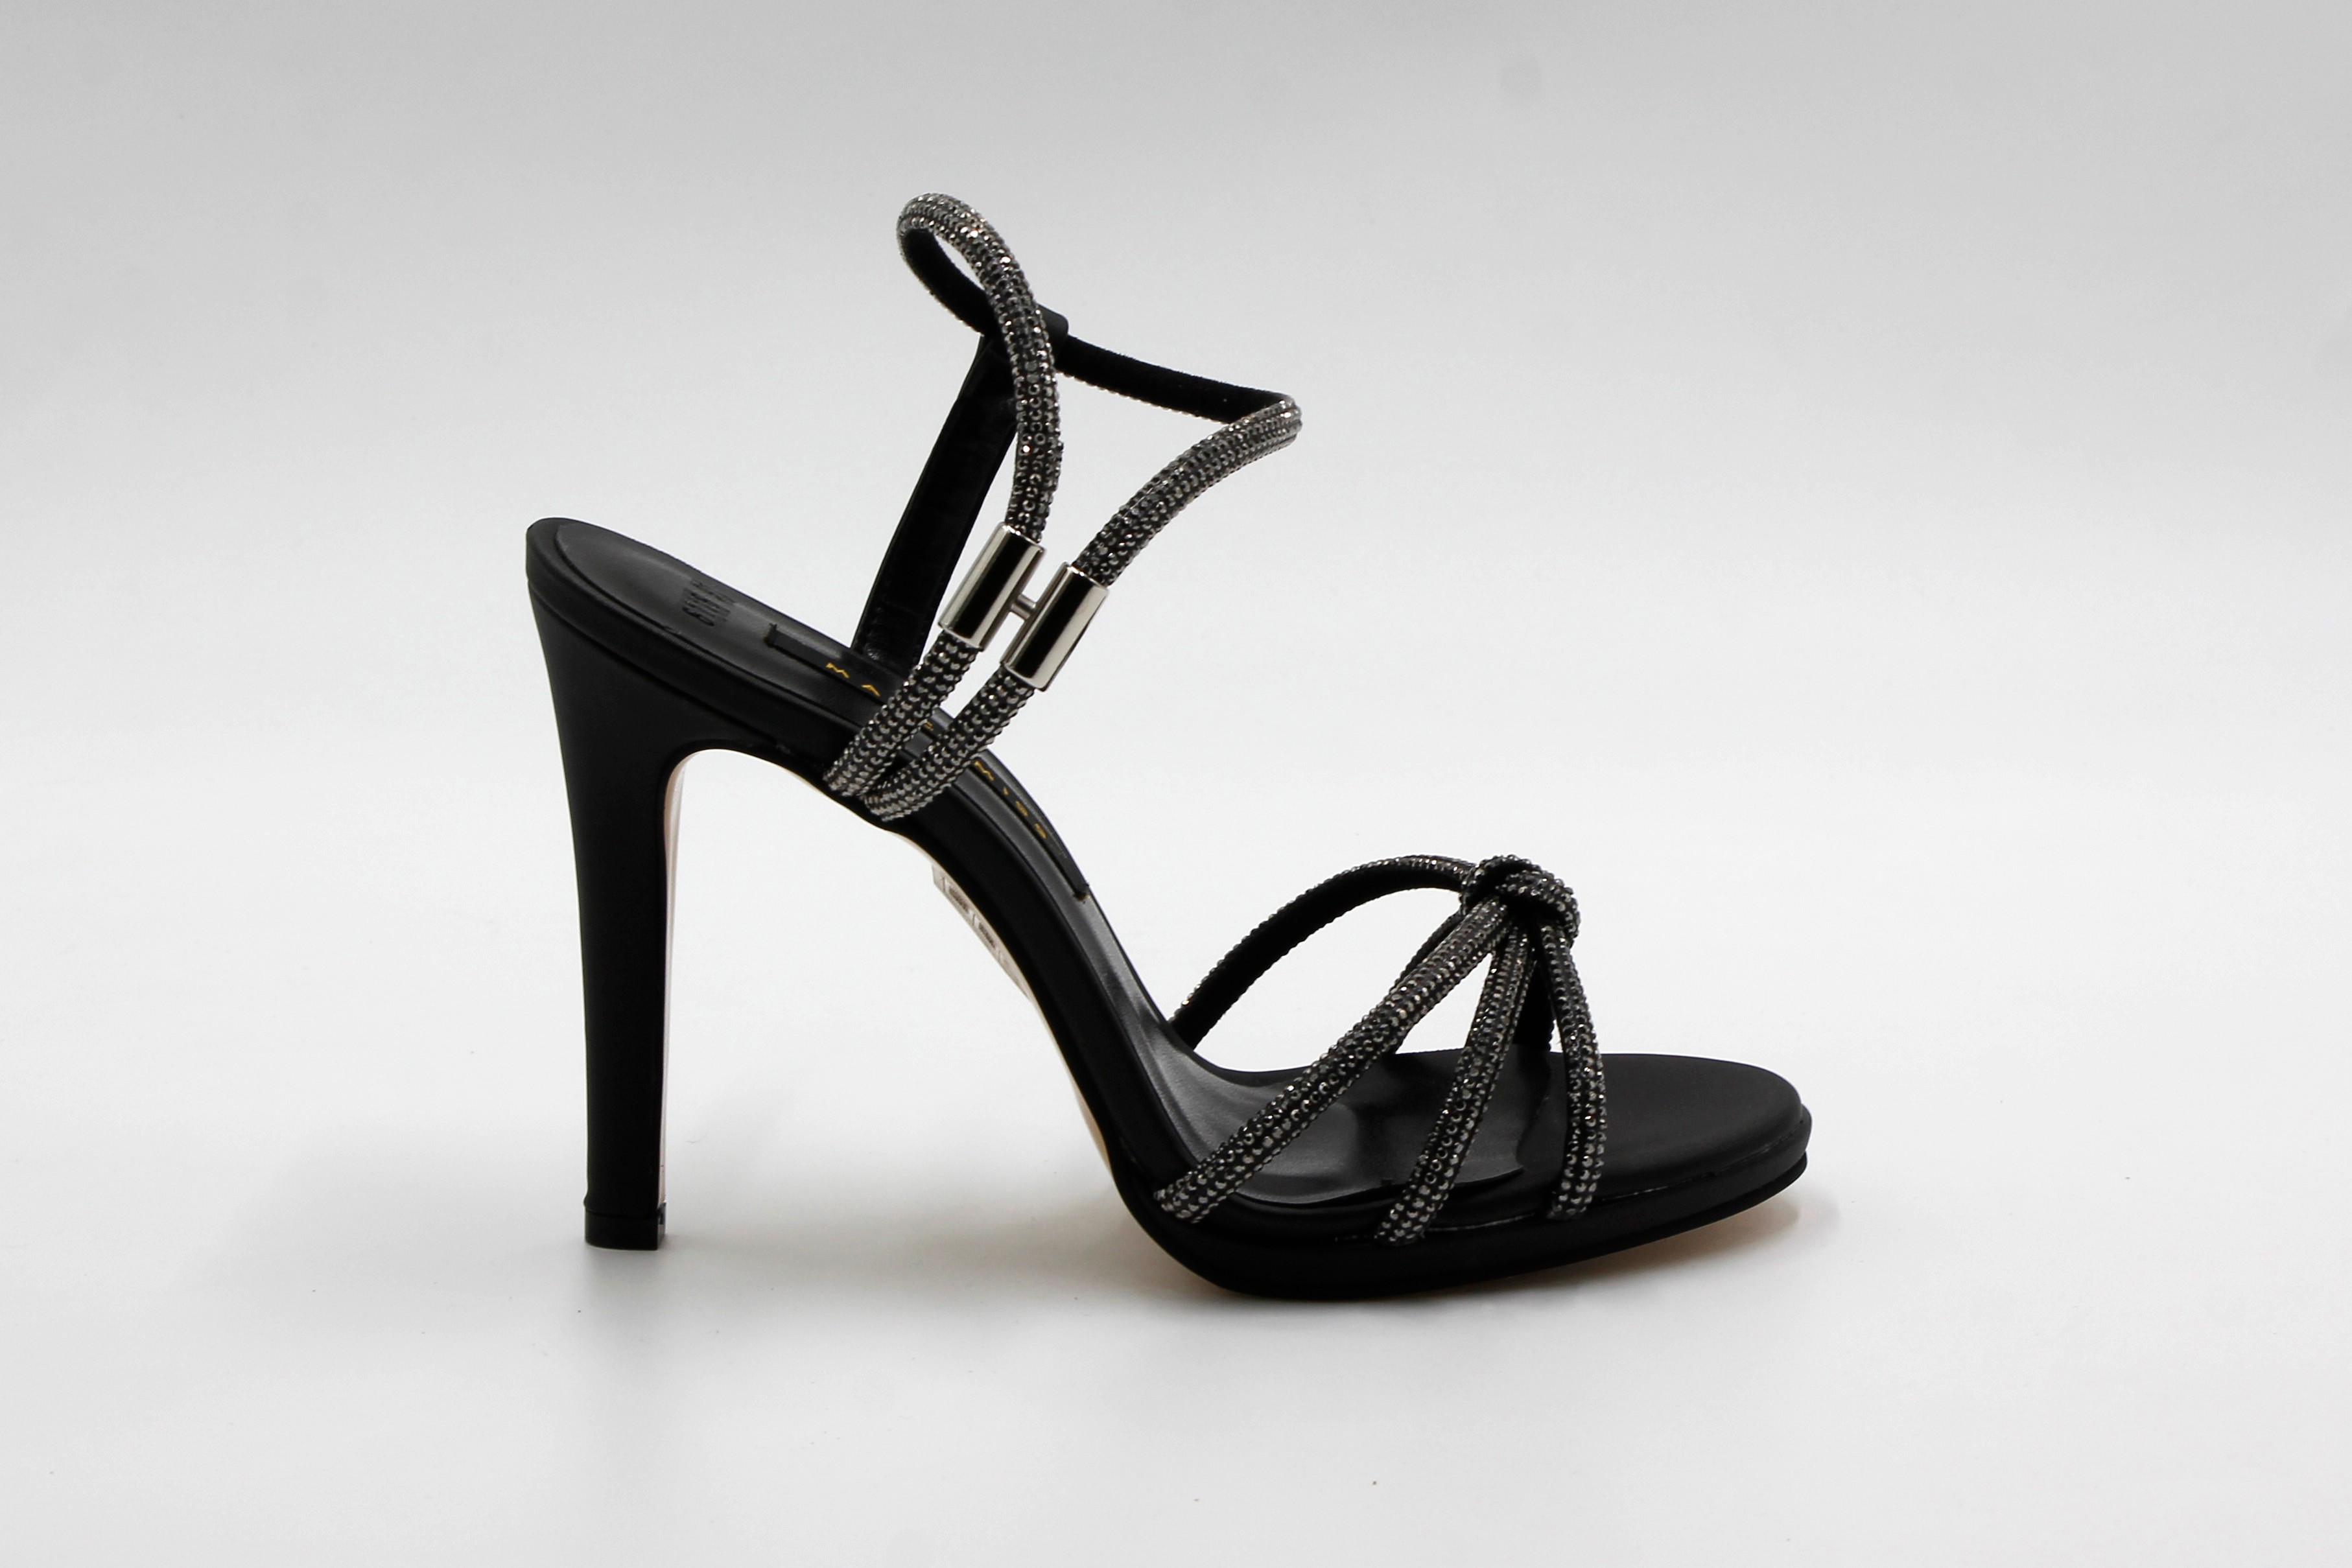 Marcamiss Kadın Taşlı Abiye Ayakkabı - Siyah